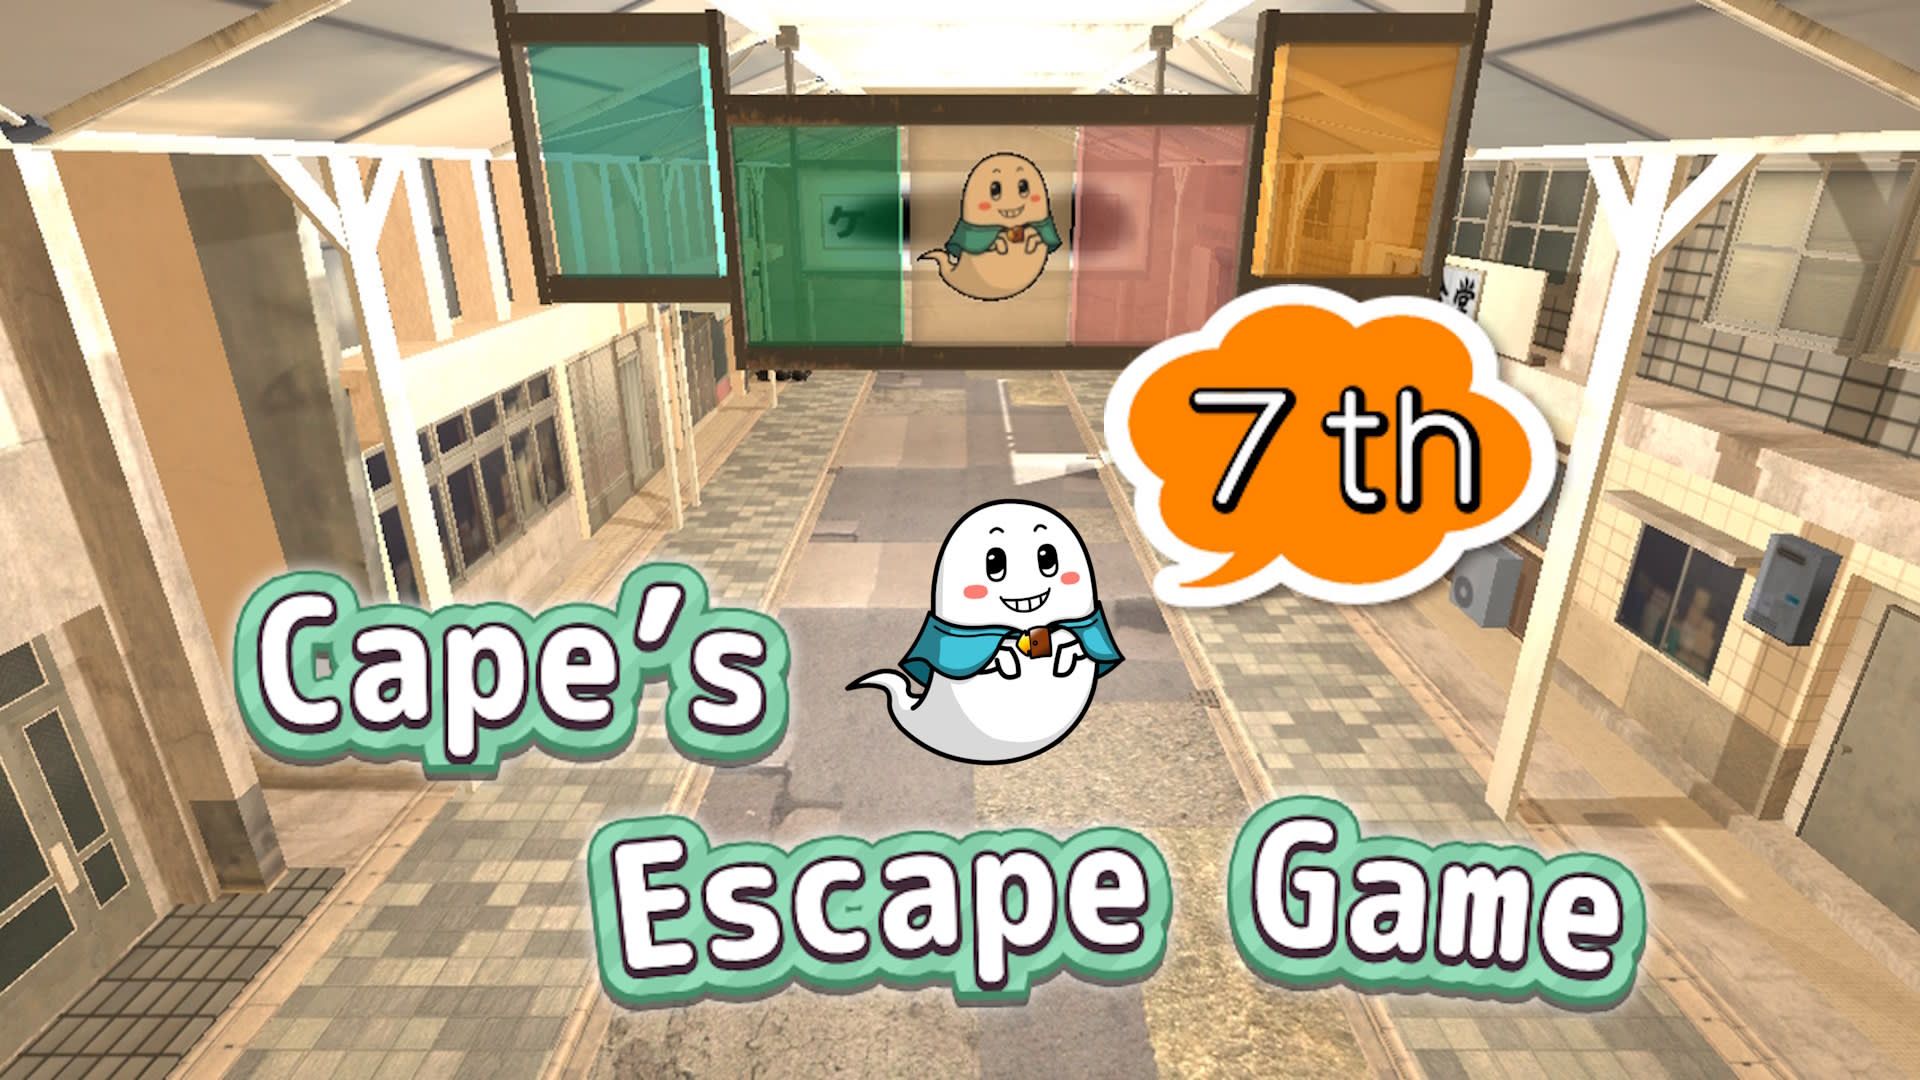 Cape’s Escape Game 7th Room 1